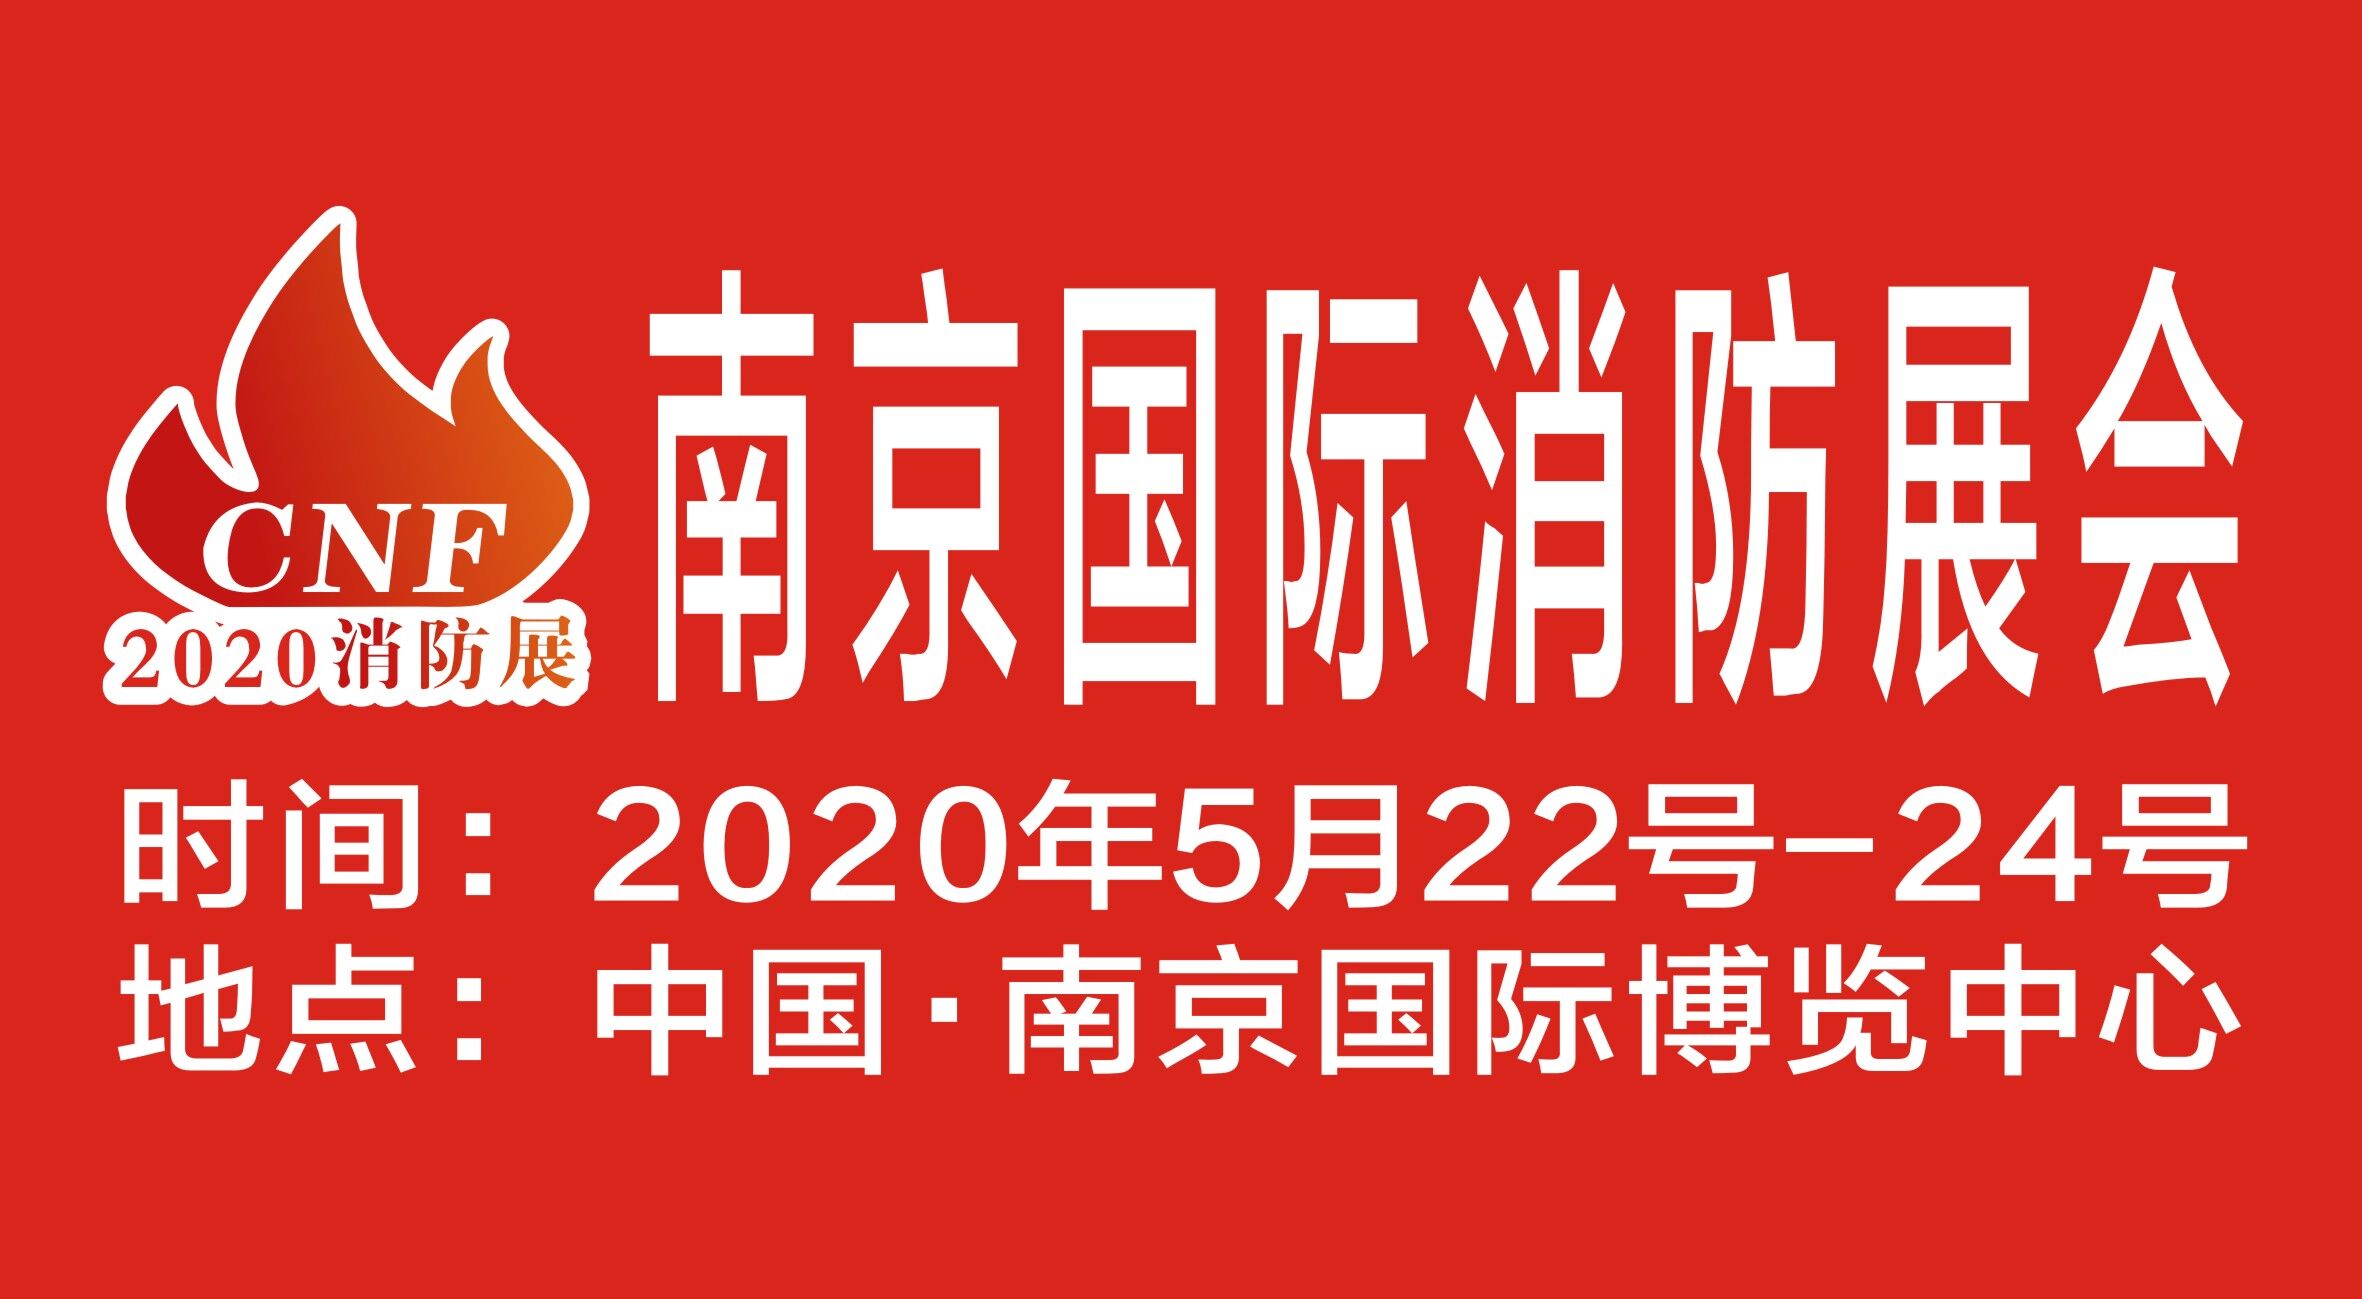 2020年消防展览丨南京消防展览会丨初心的热度向火而行